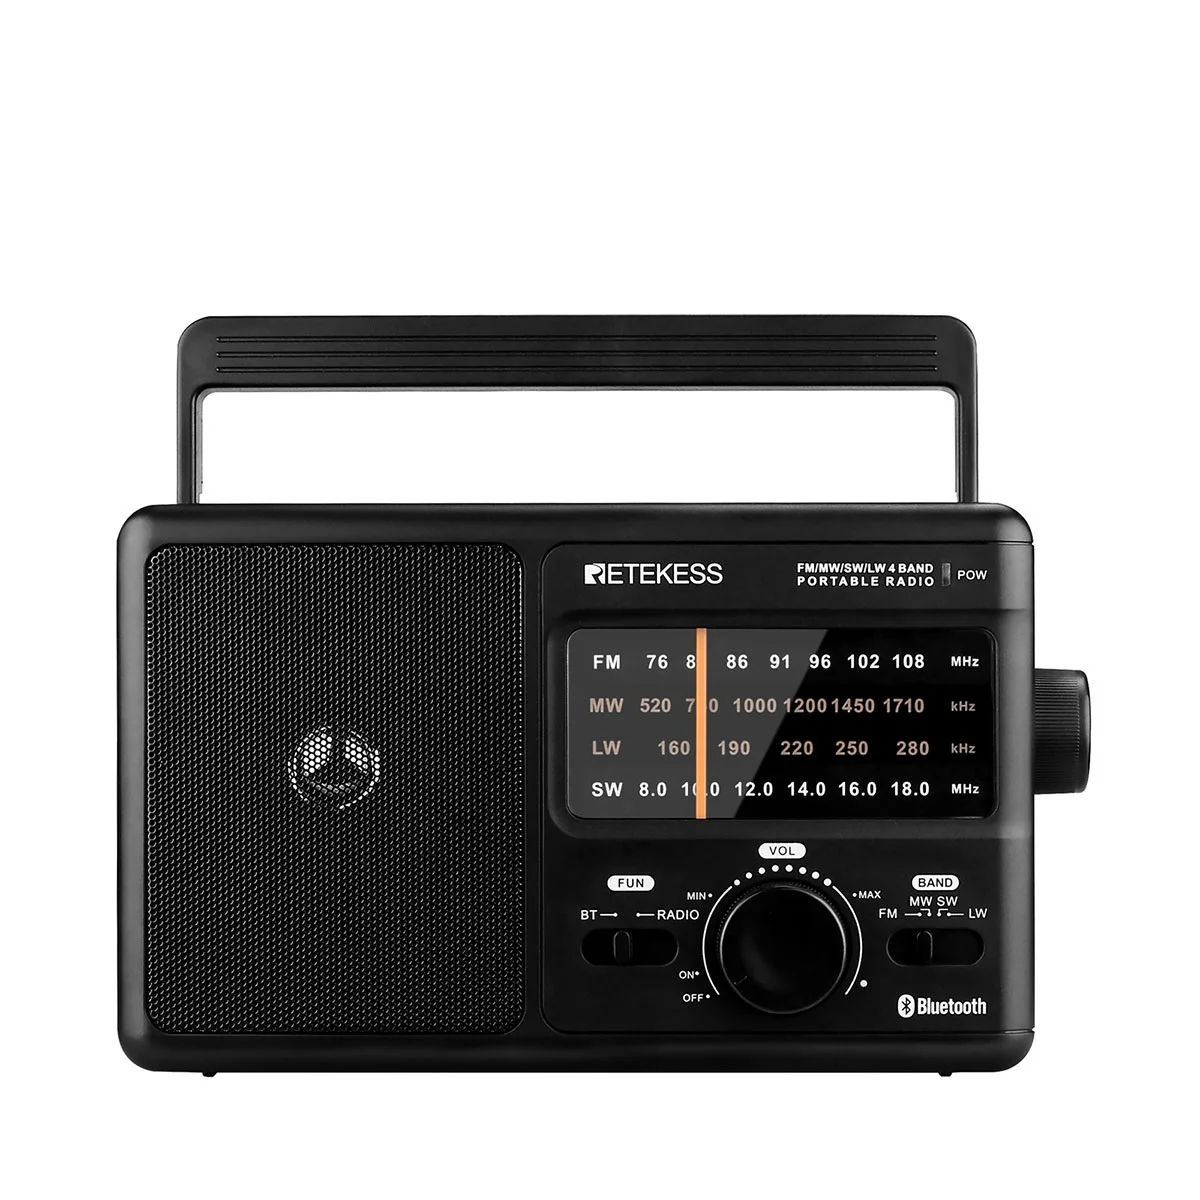 

Top TR626 AM FM SW LW портативные радиоприемники с Bluetooth AC или 4xD аккумуляторным питанием аналоговый радиоприемник с большой ручкой для пожилых люде...